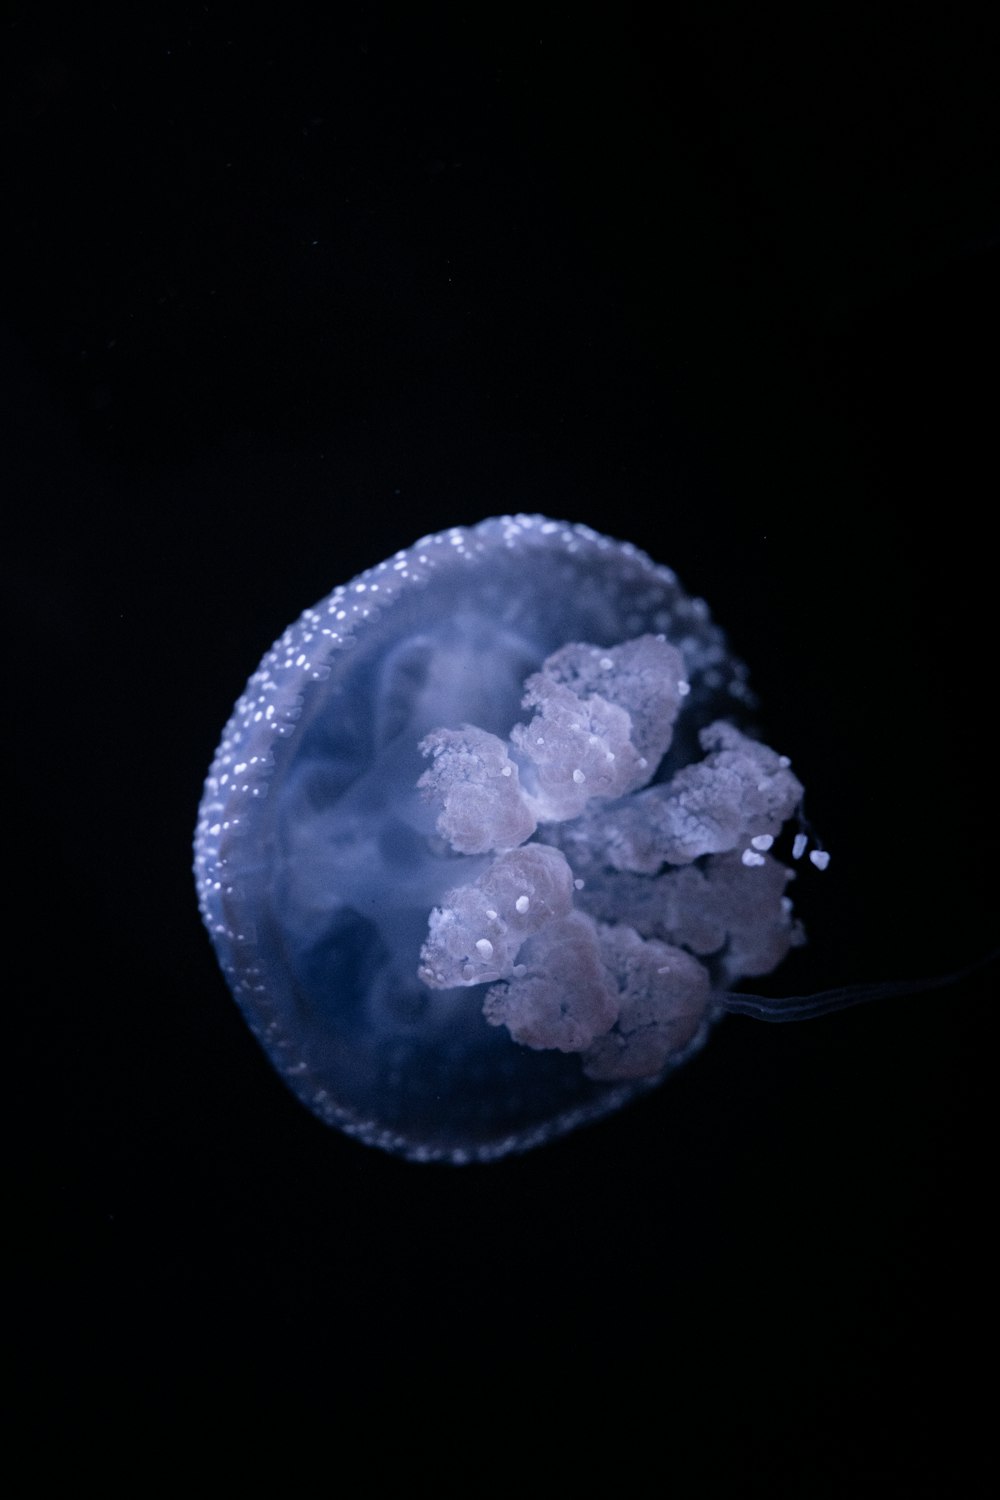 Eine Qualle schwimmt im dunklen Wasser